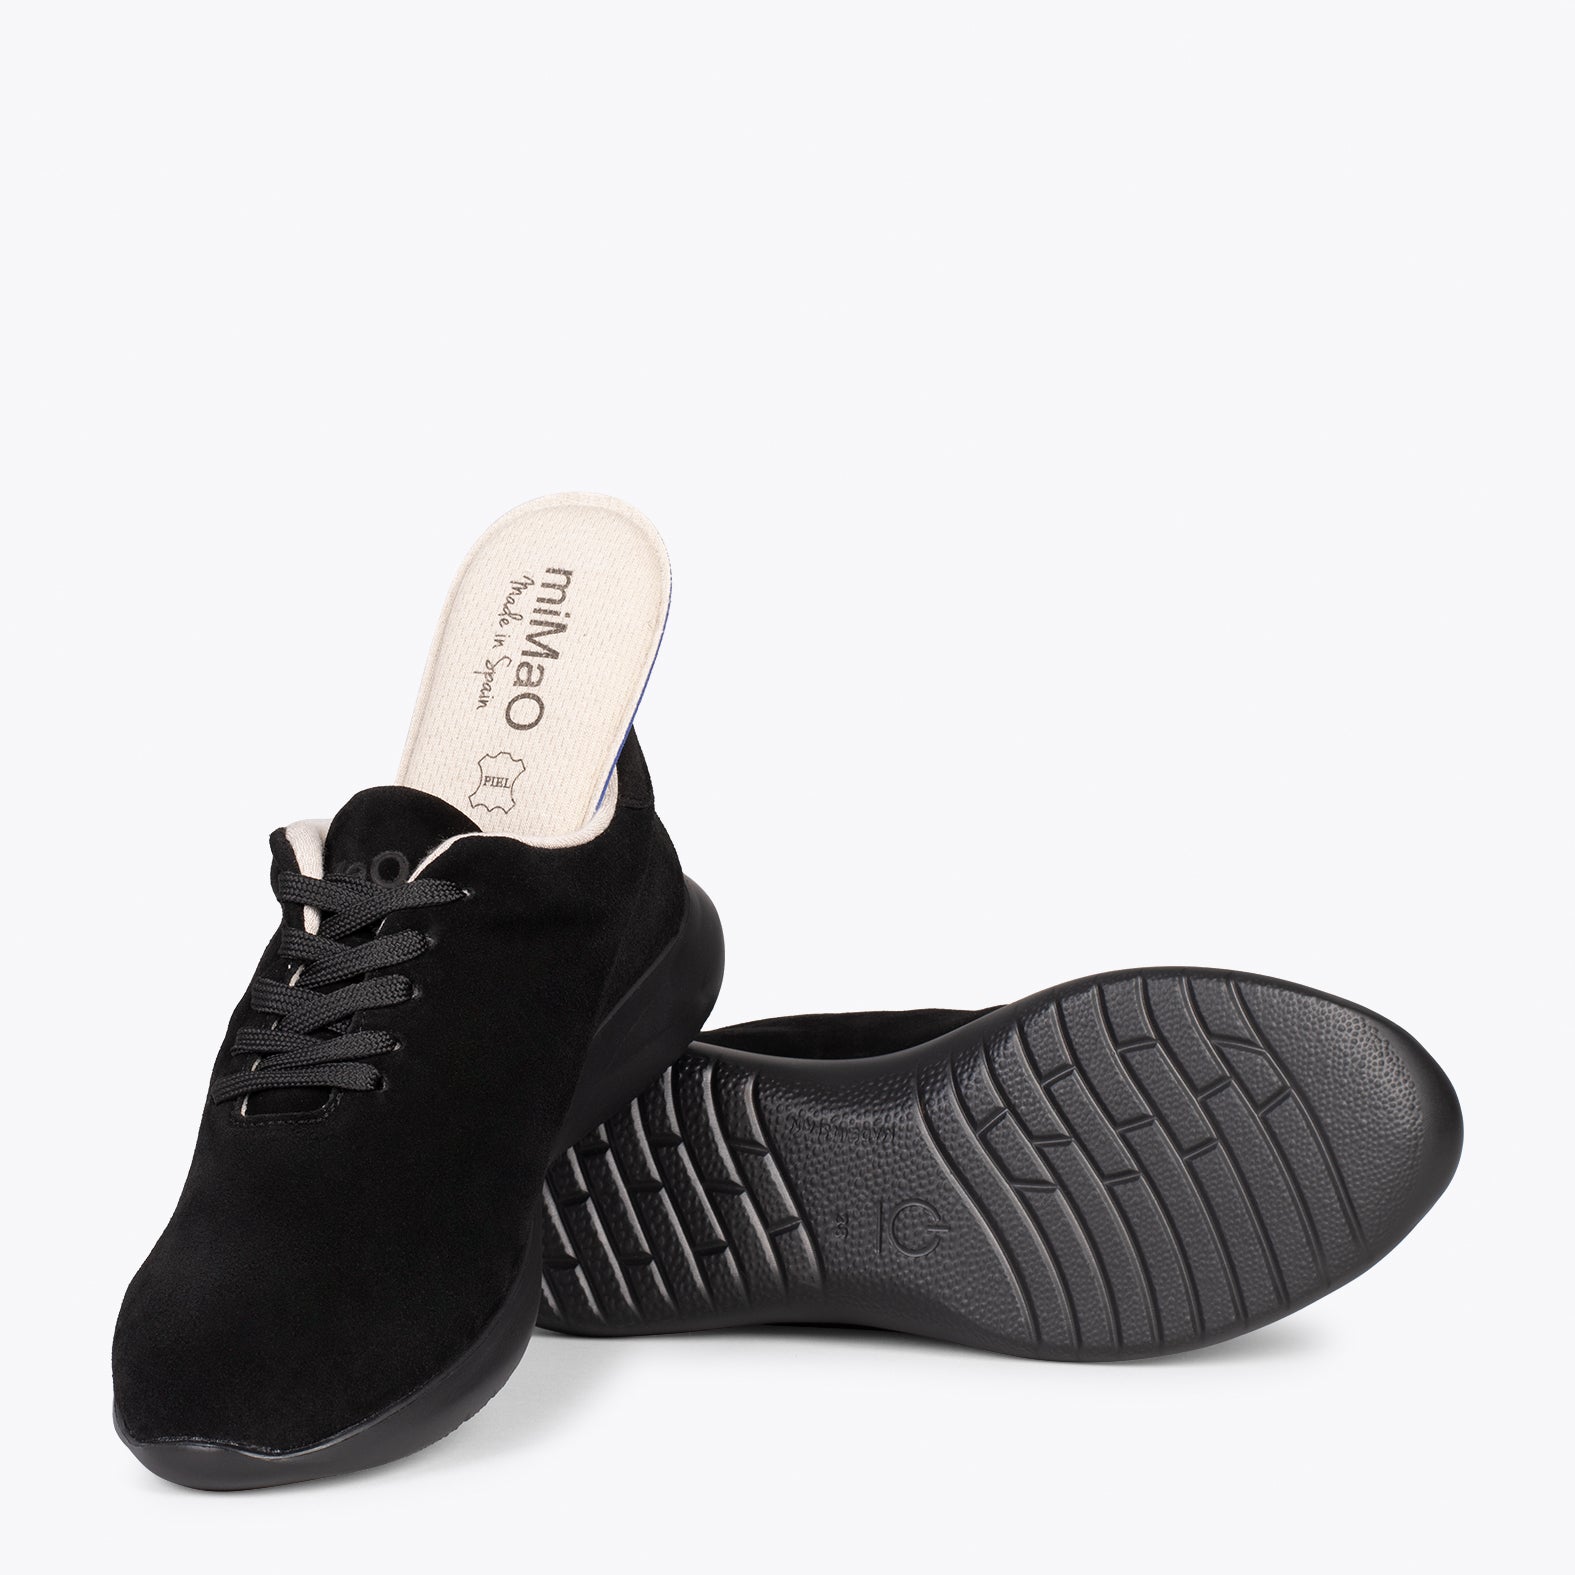 miMaO - WALK – Zapatillas cómodas de mujer color Negro plantilla extraíble - miMaO